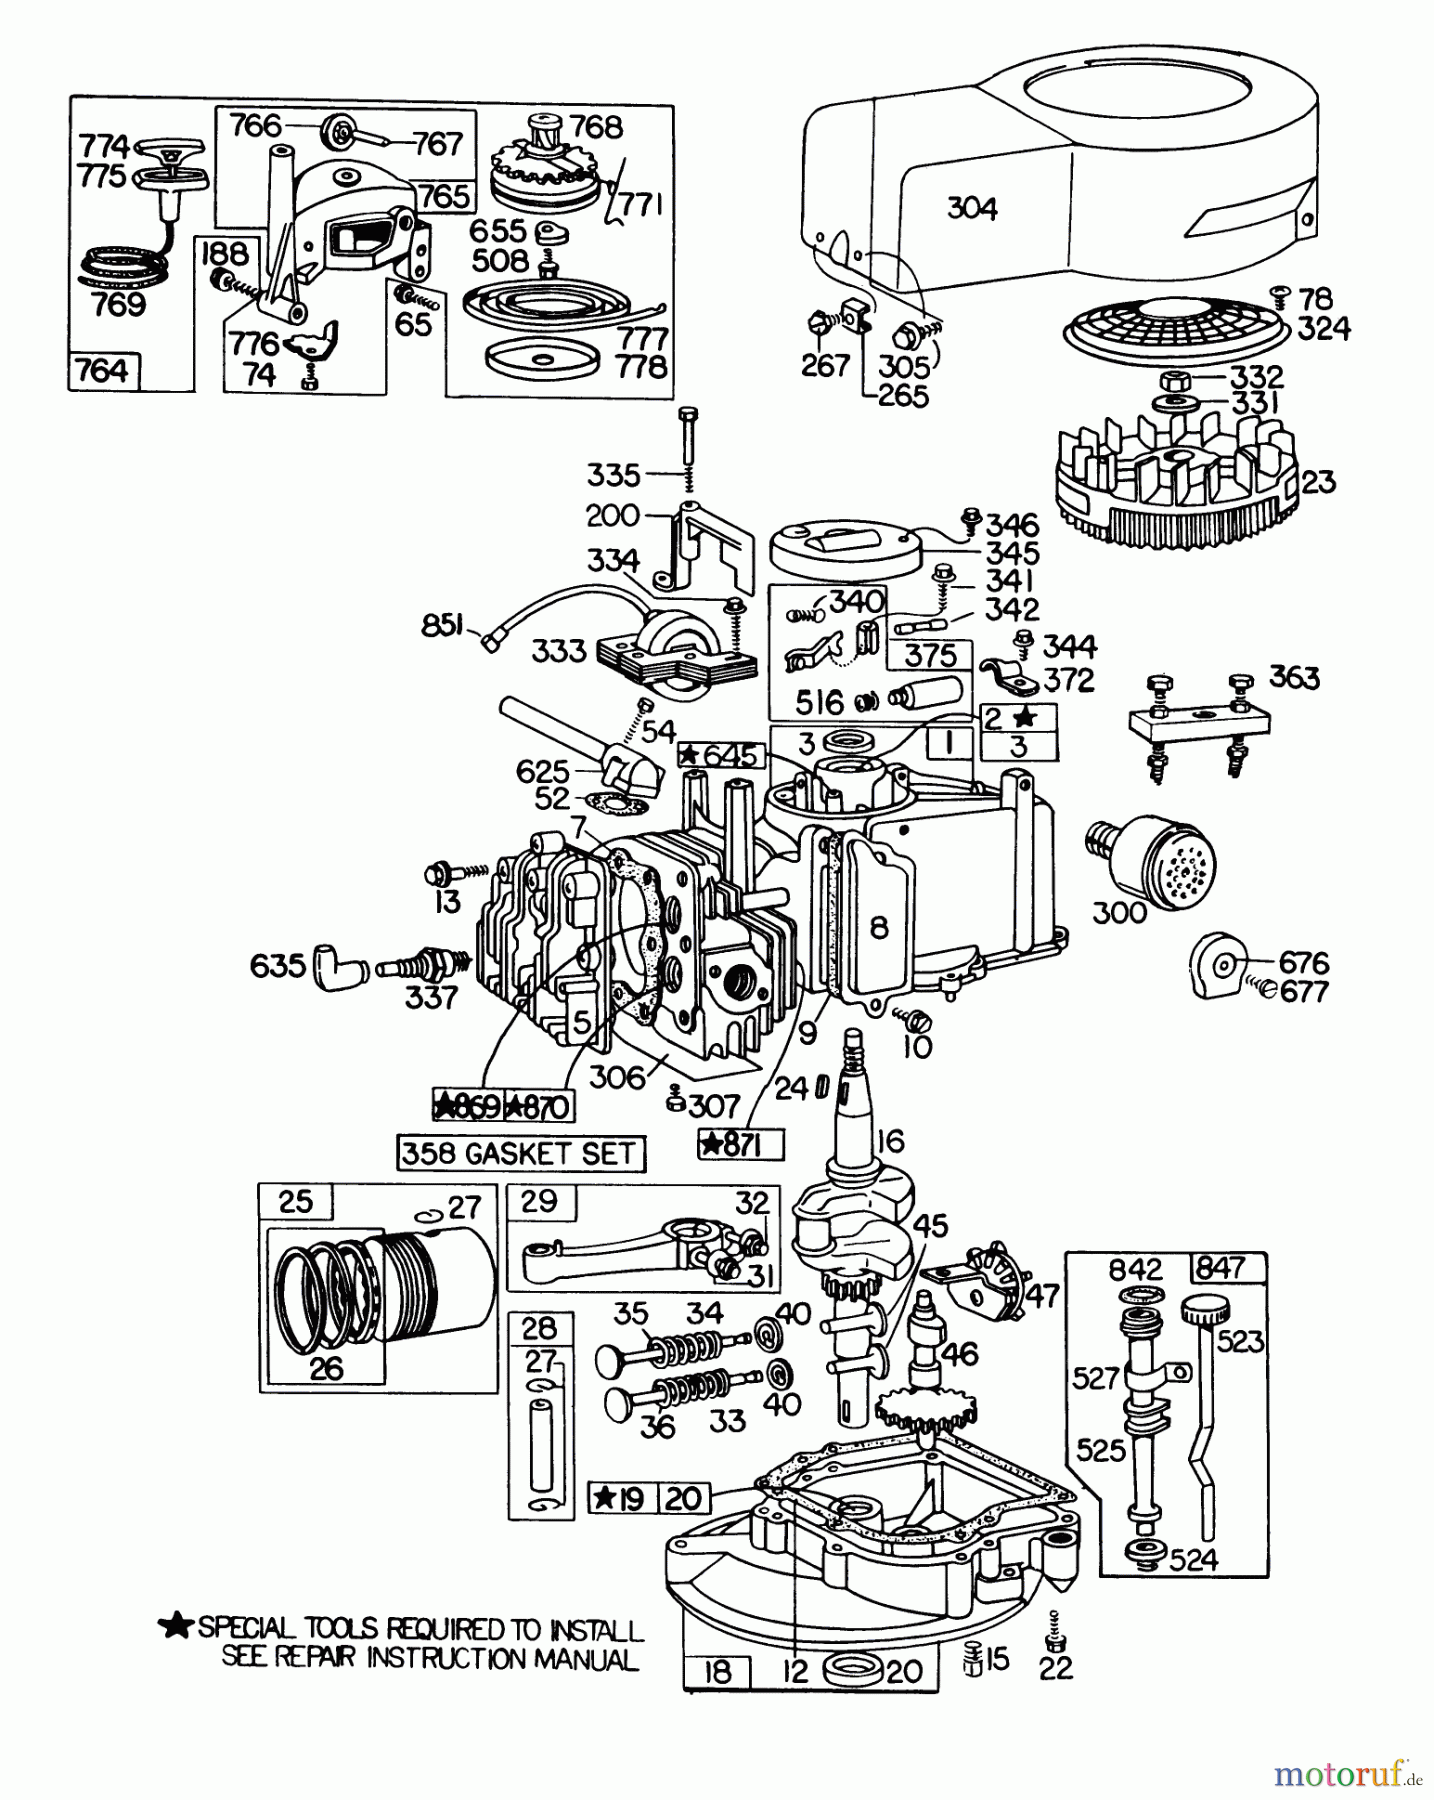  Toro Neu Mowers, Walk-Behind Seite 1 20785 - Toro Lawnmower, 1979 (9000001-9999999) ENGINE BRIGGS & STRATTON MODEL NO. 110908-0380-02